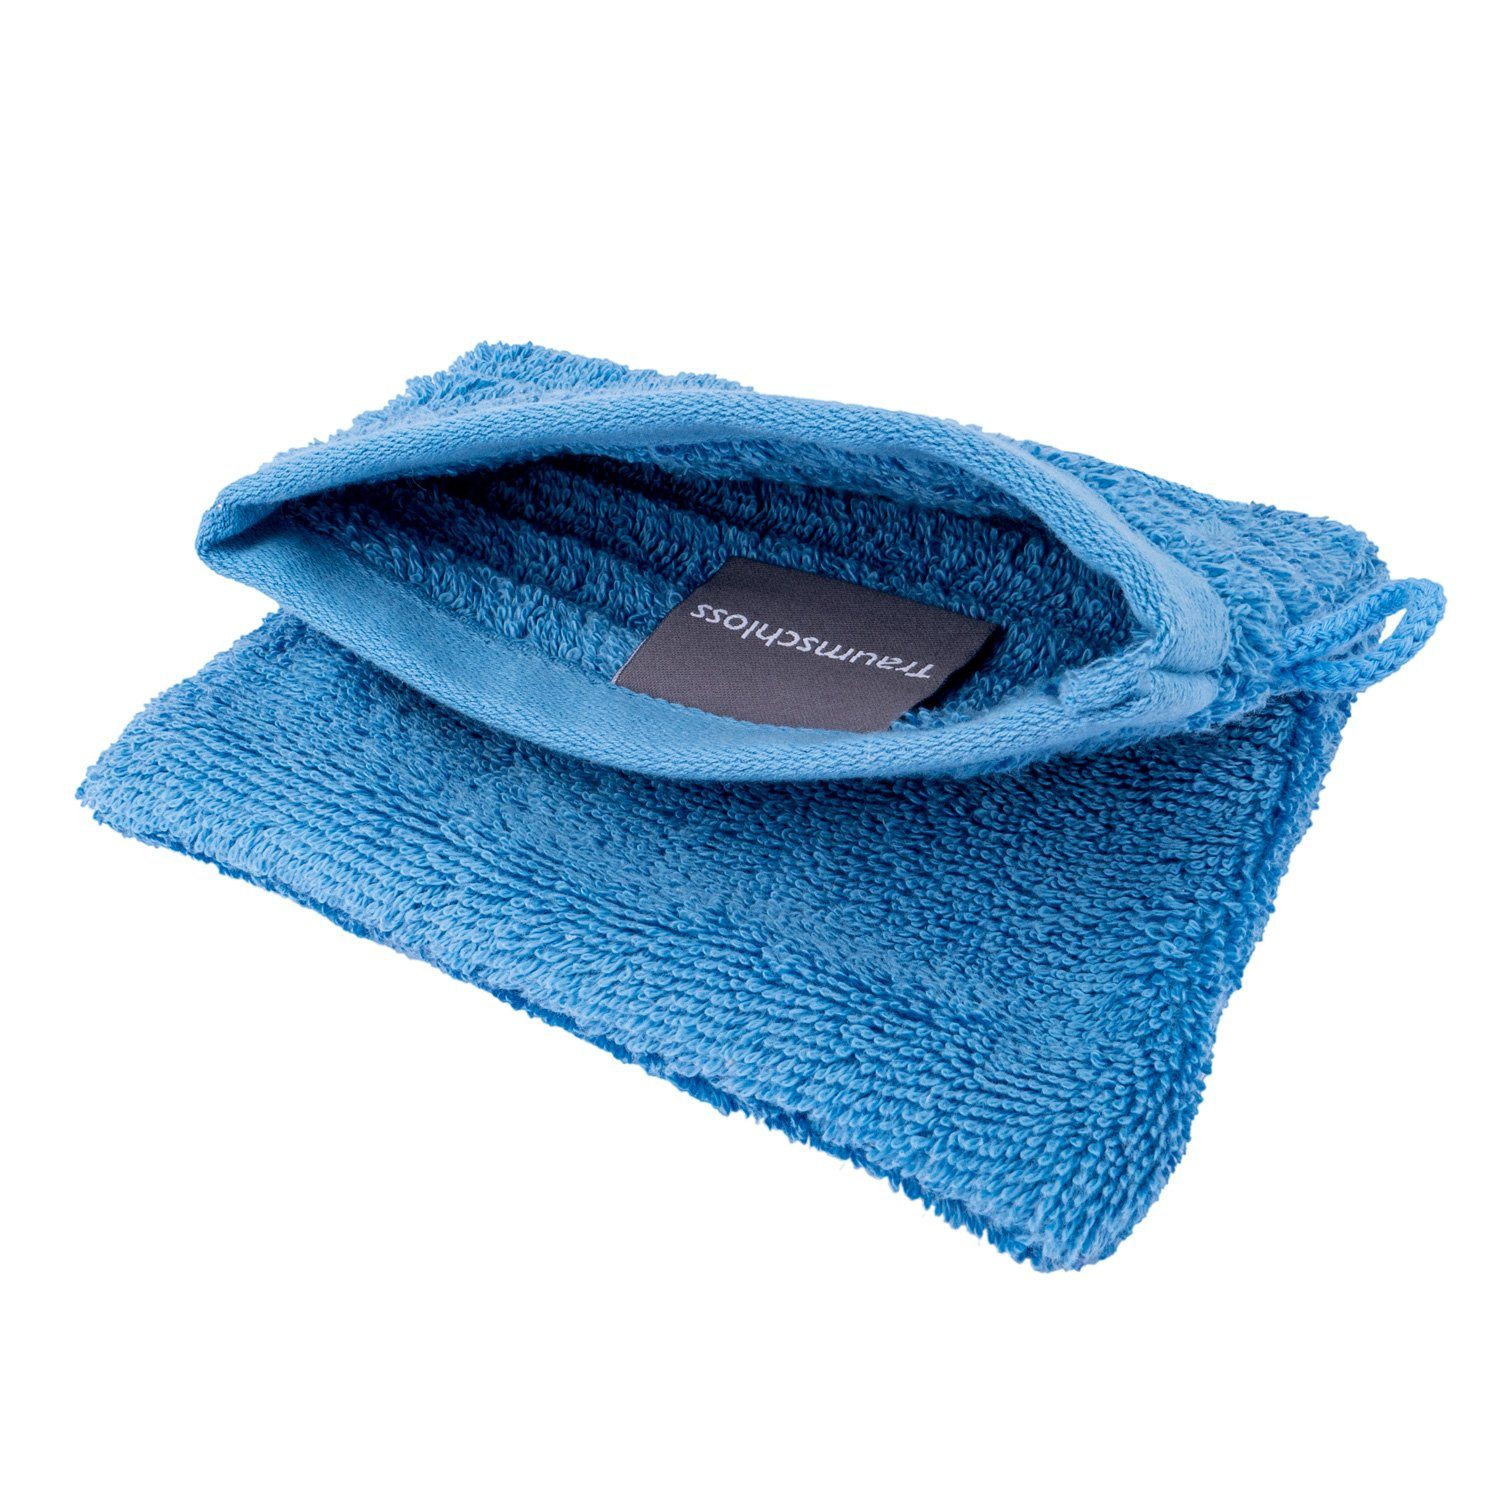 Traumschloss Waschlappen Premium-Line (1-tlg), nordic blau 600g/m² amerikanische 100% Supima Baumwolle mit